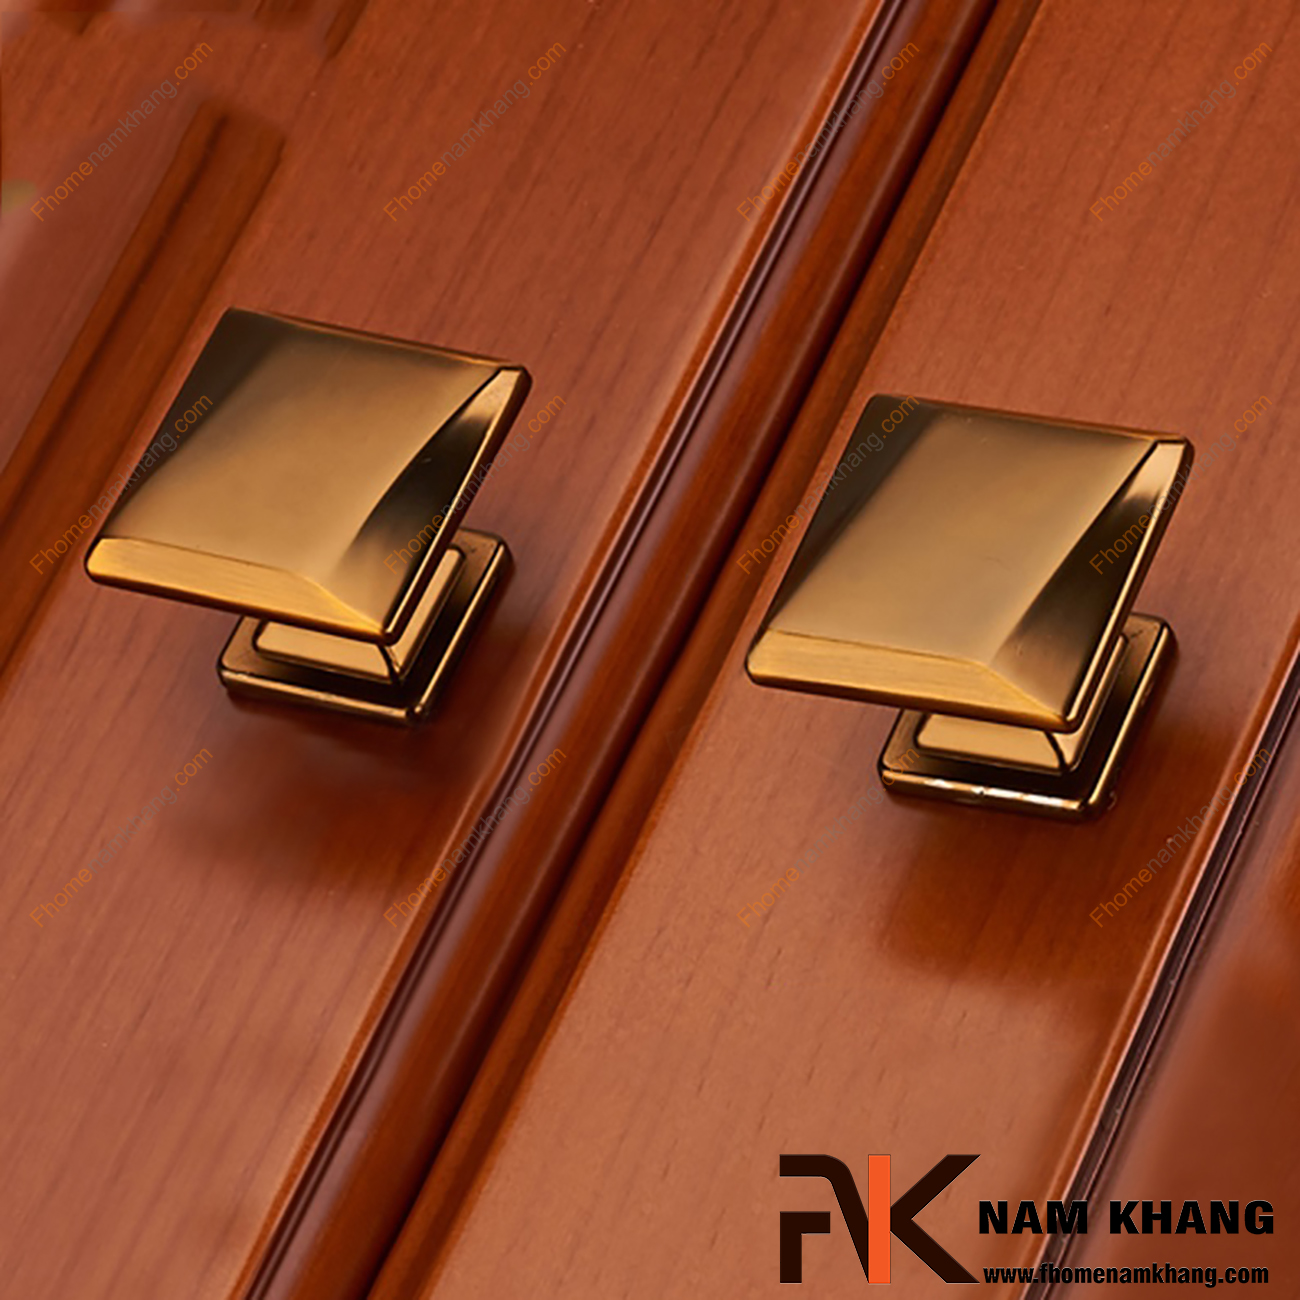 Núm kéo cửa tủ màu cafe NK282-CF, sản phẩm núm kéo cửa tủ dạng đầu vuông được cách điệu với hai đường chéo cực mạnh.